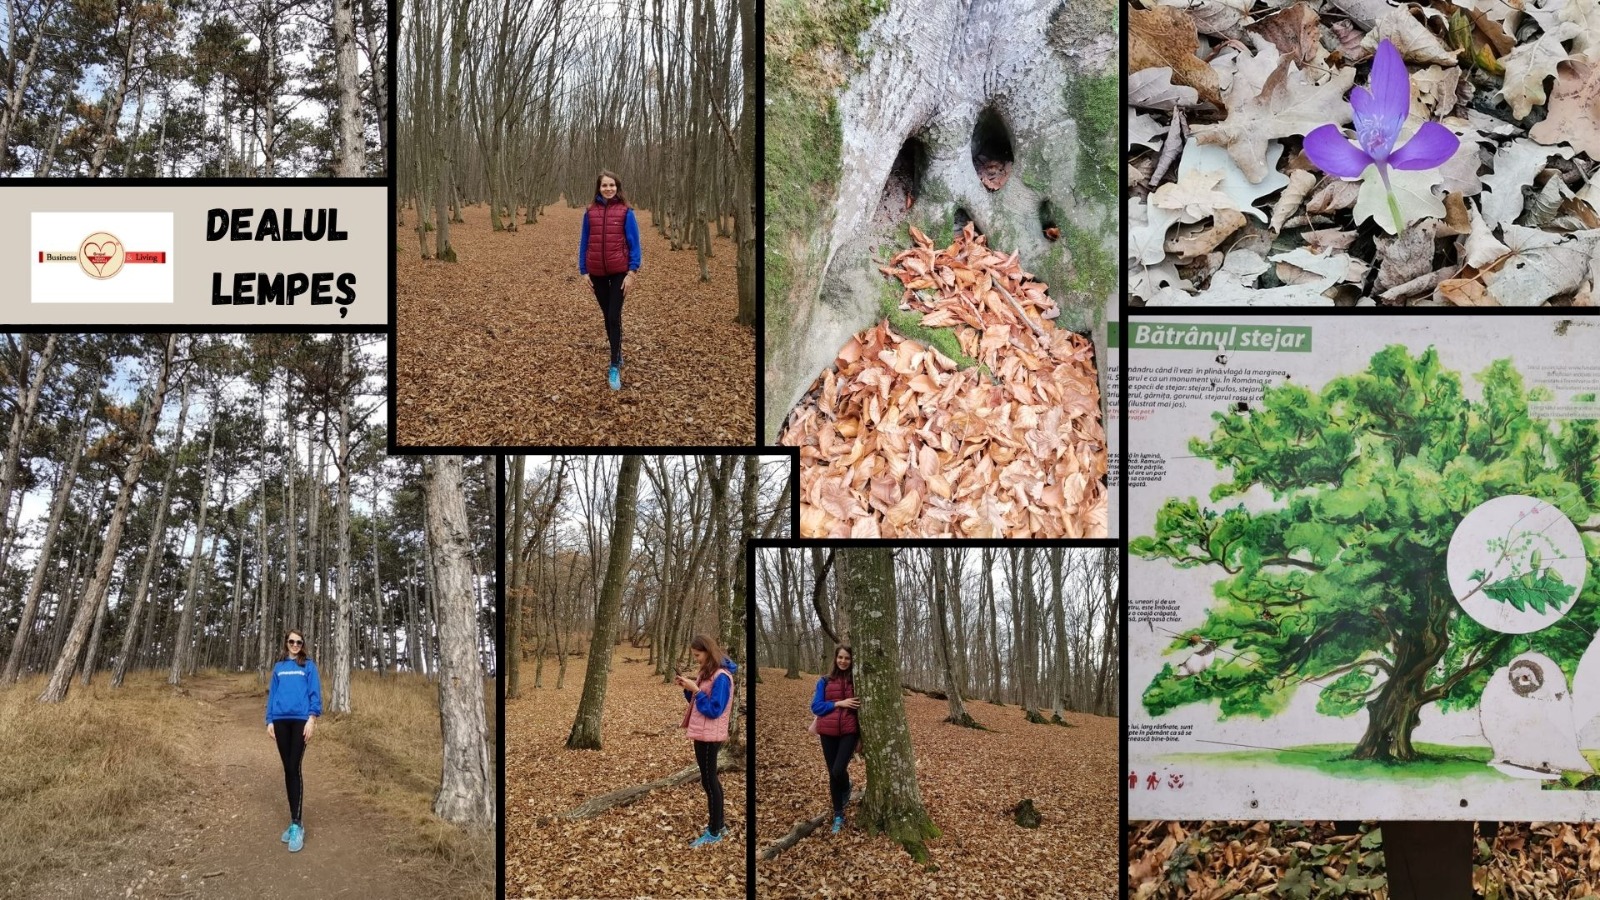 Bună drag cititor, Astăzi vă voi reaminti despre:Dealul Lempeș-un labirint forestier